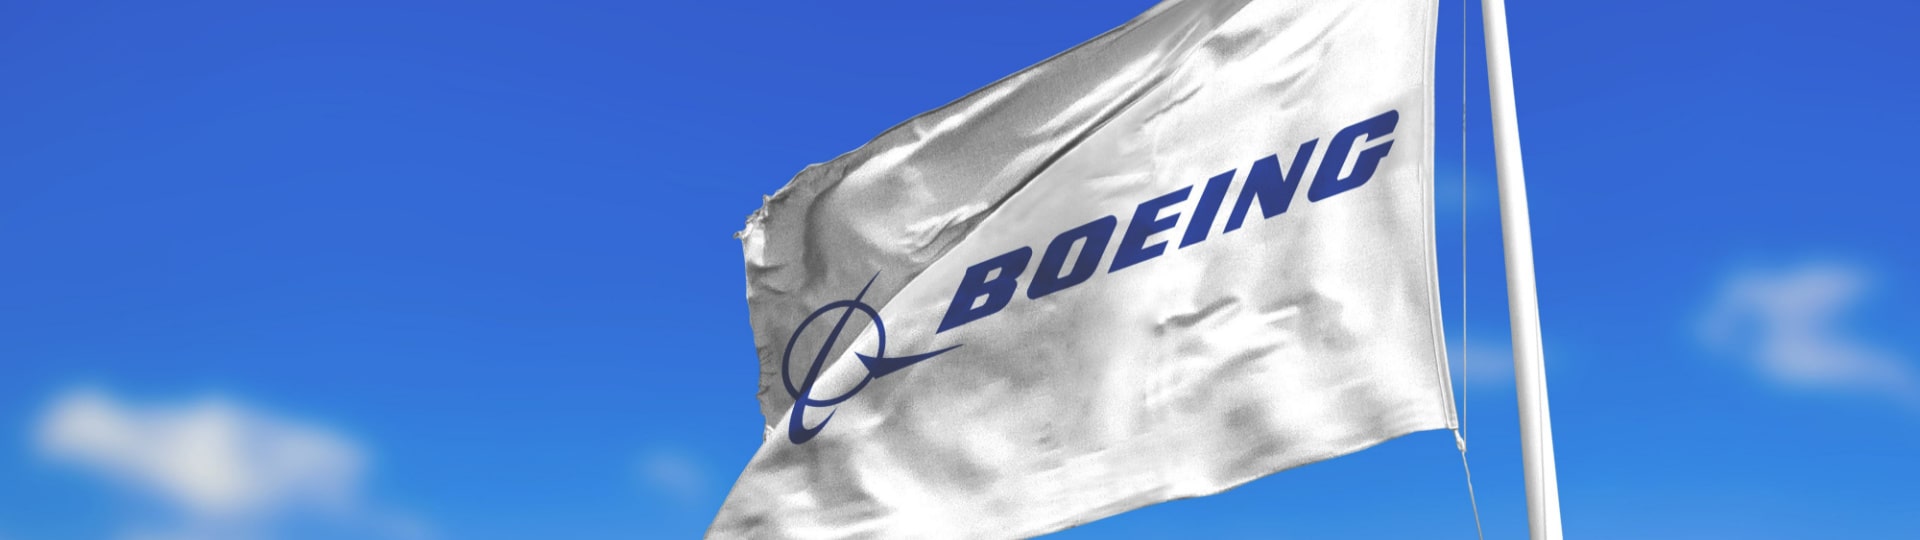 Boeing loni snížil ztrátu více než o polovinu